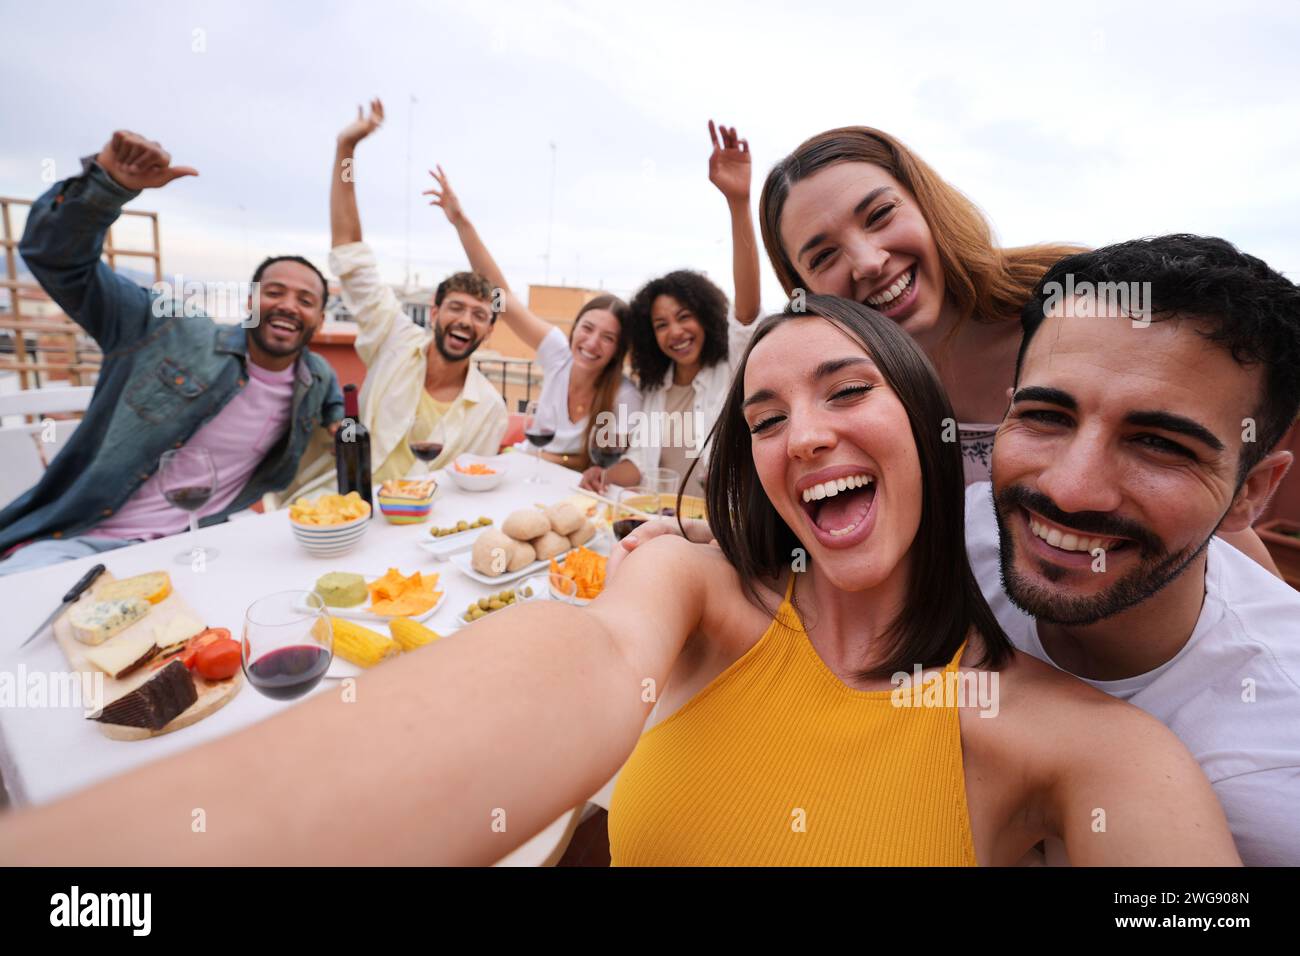 Eccitata giovane bella donna che scatta selfie di gruppo con amici gioiosi sul tetto. Foto di gente allegra Foto Stock